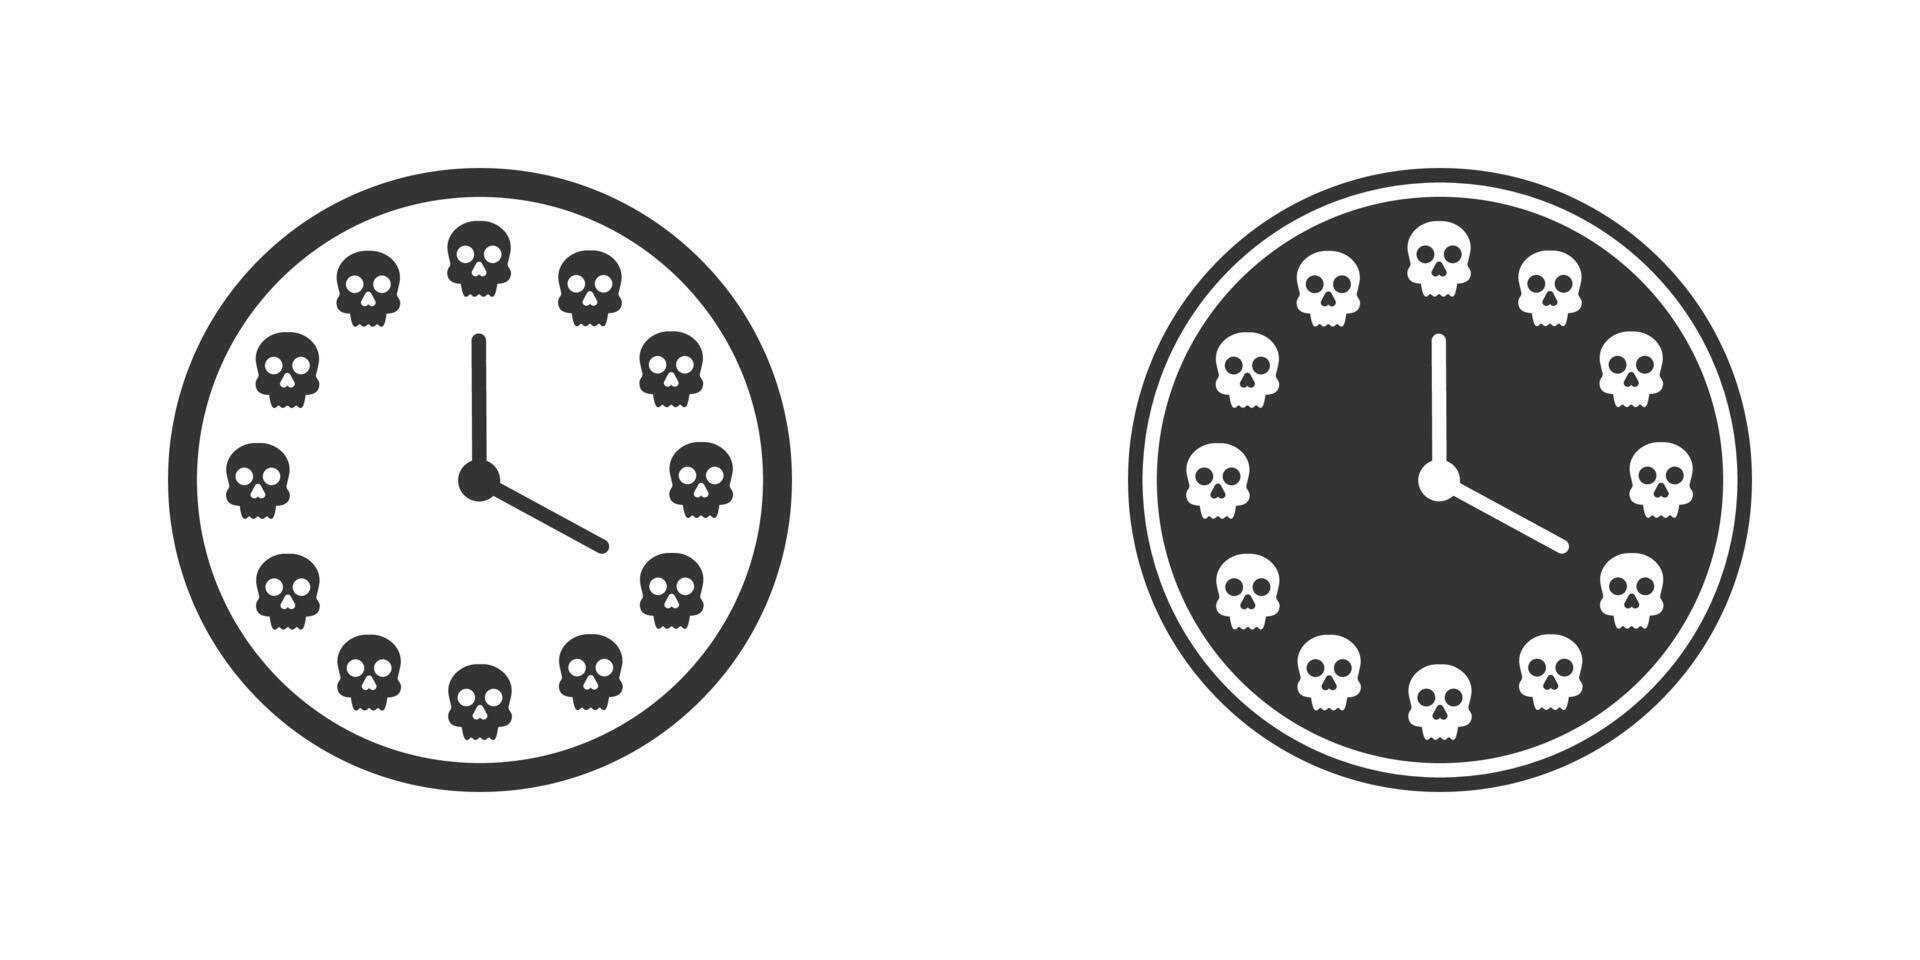 Clock face with skulls. Vector illustration.